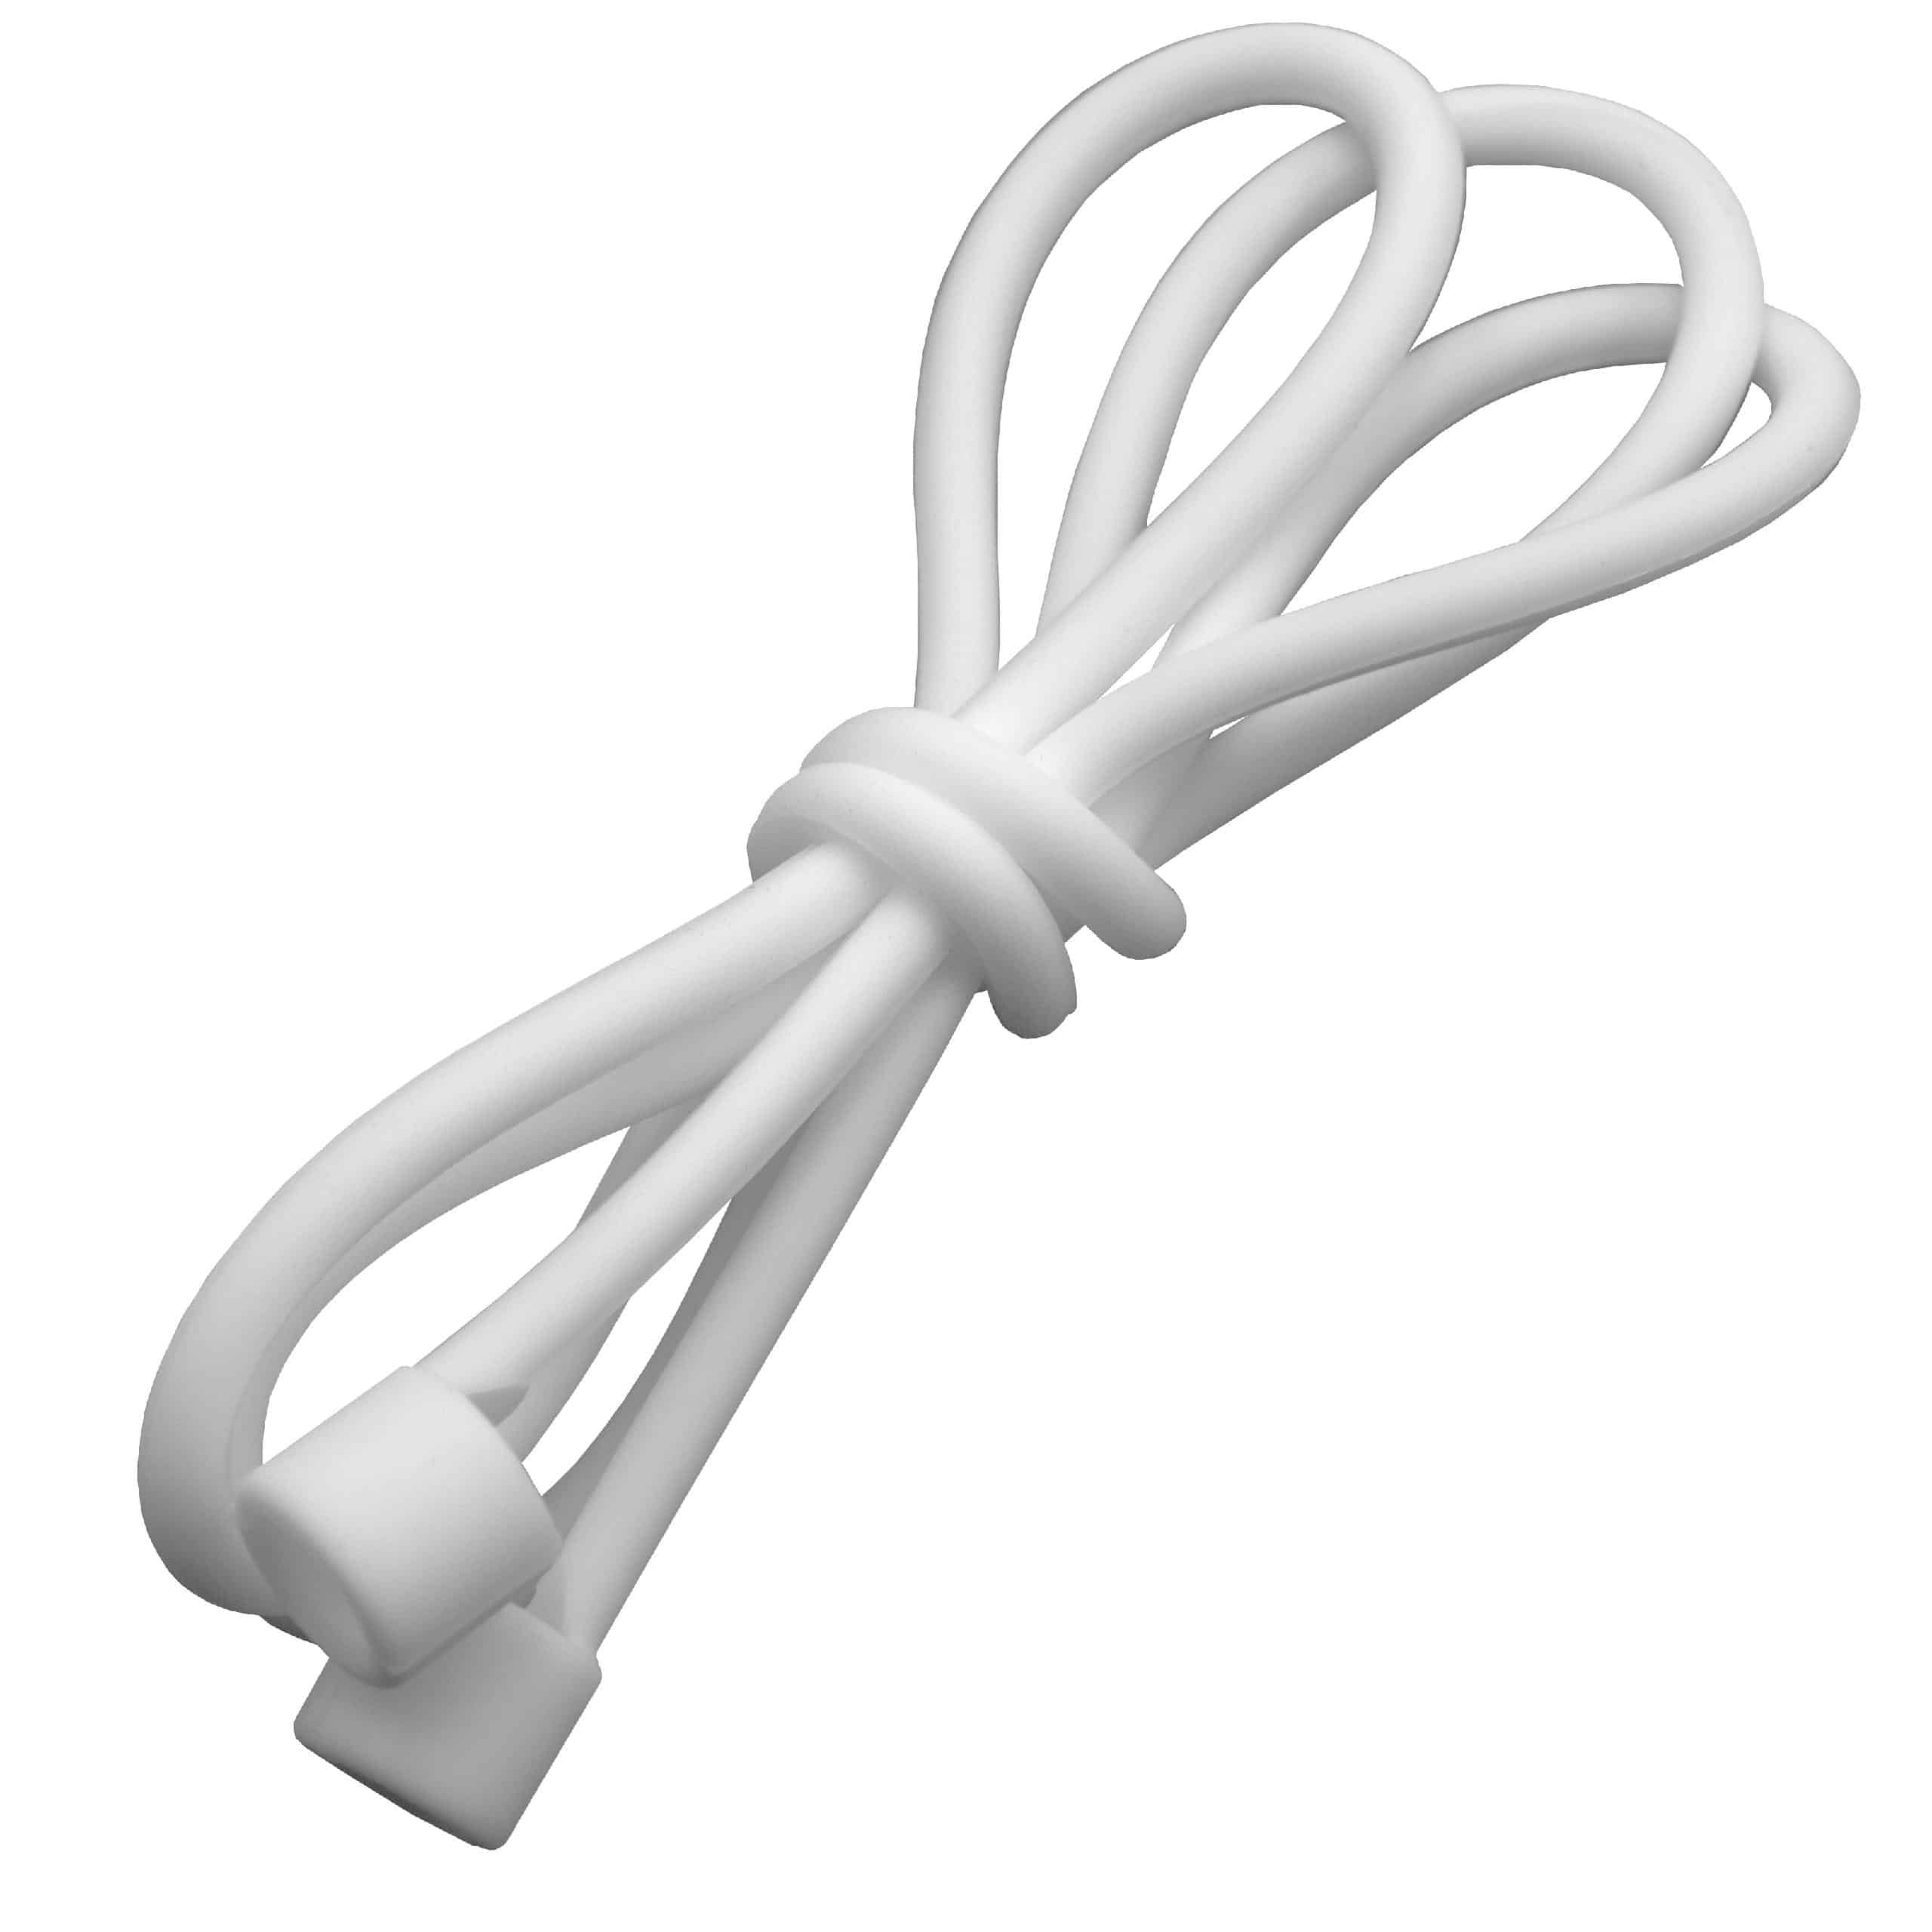 vhbw Anti-Lost Neck StrapWireless Earphones - Silicone, 55 cm, white